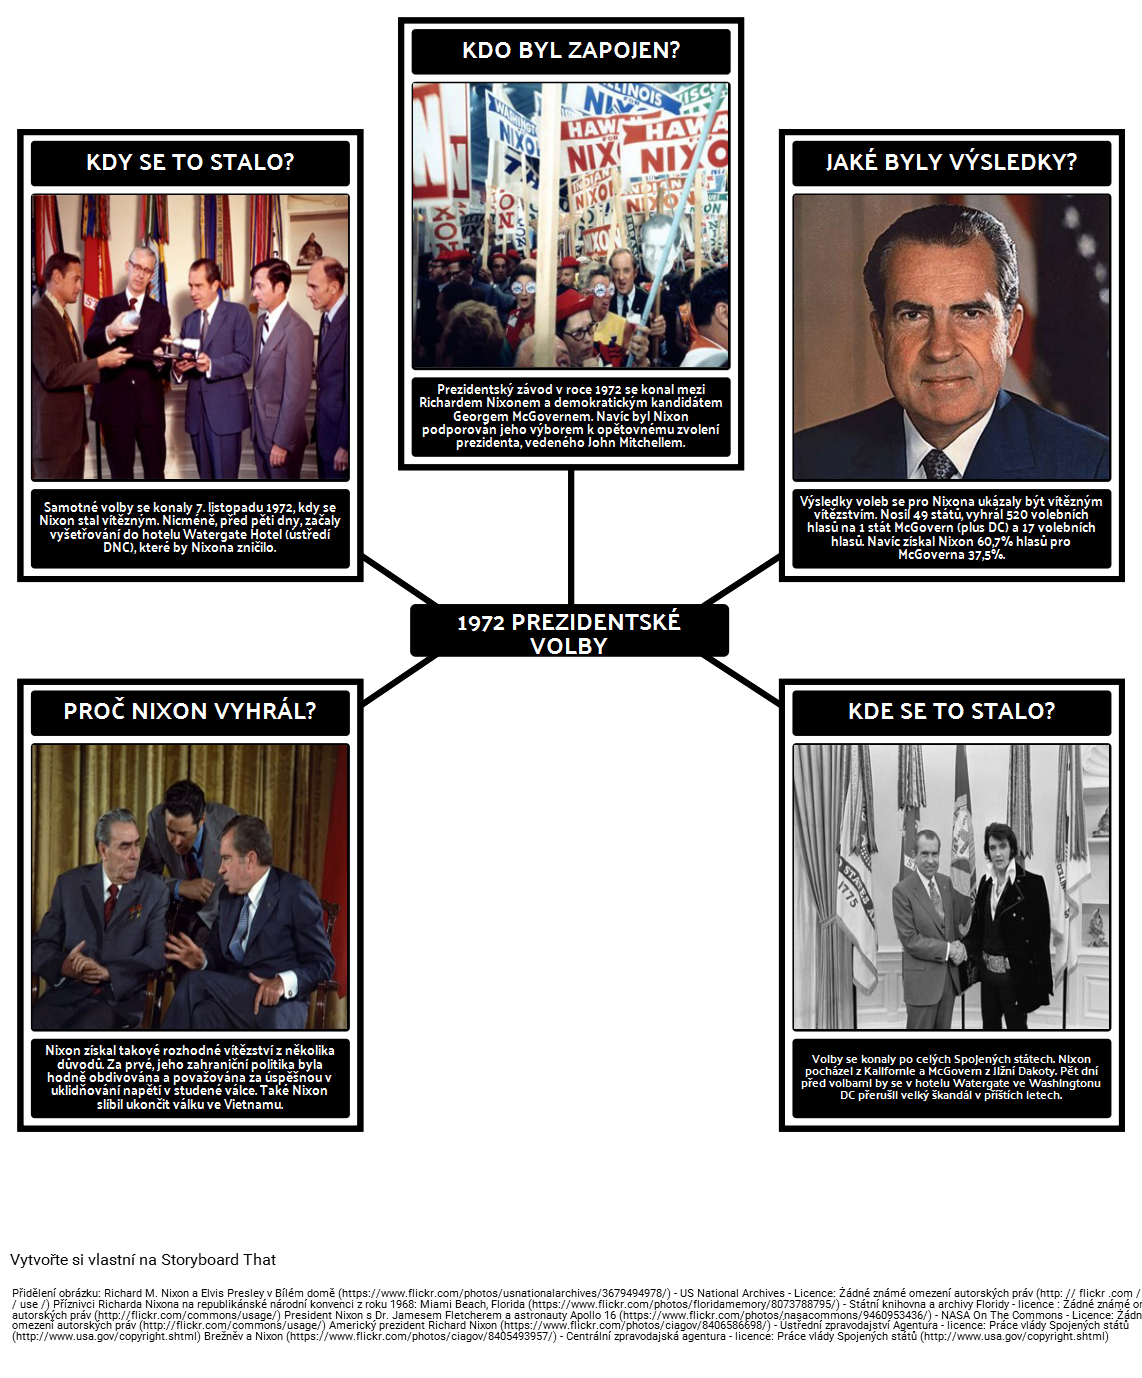 Předsednictví Richard Nixon - 5 WS 1972 volbách